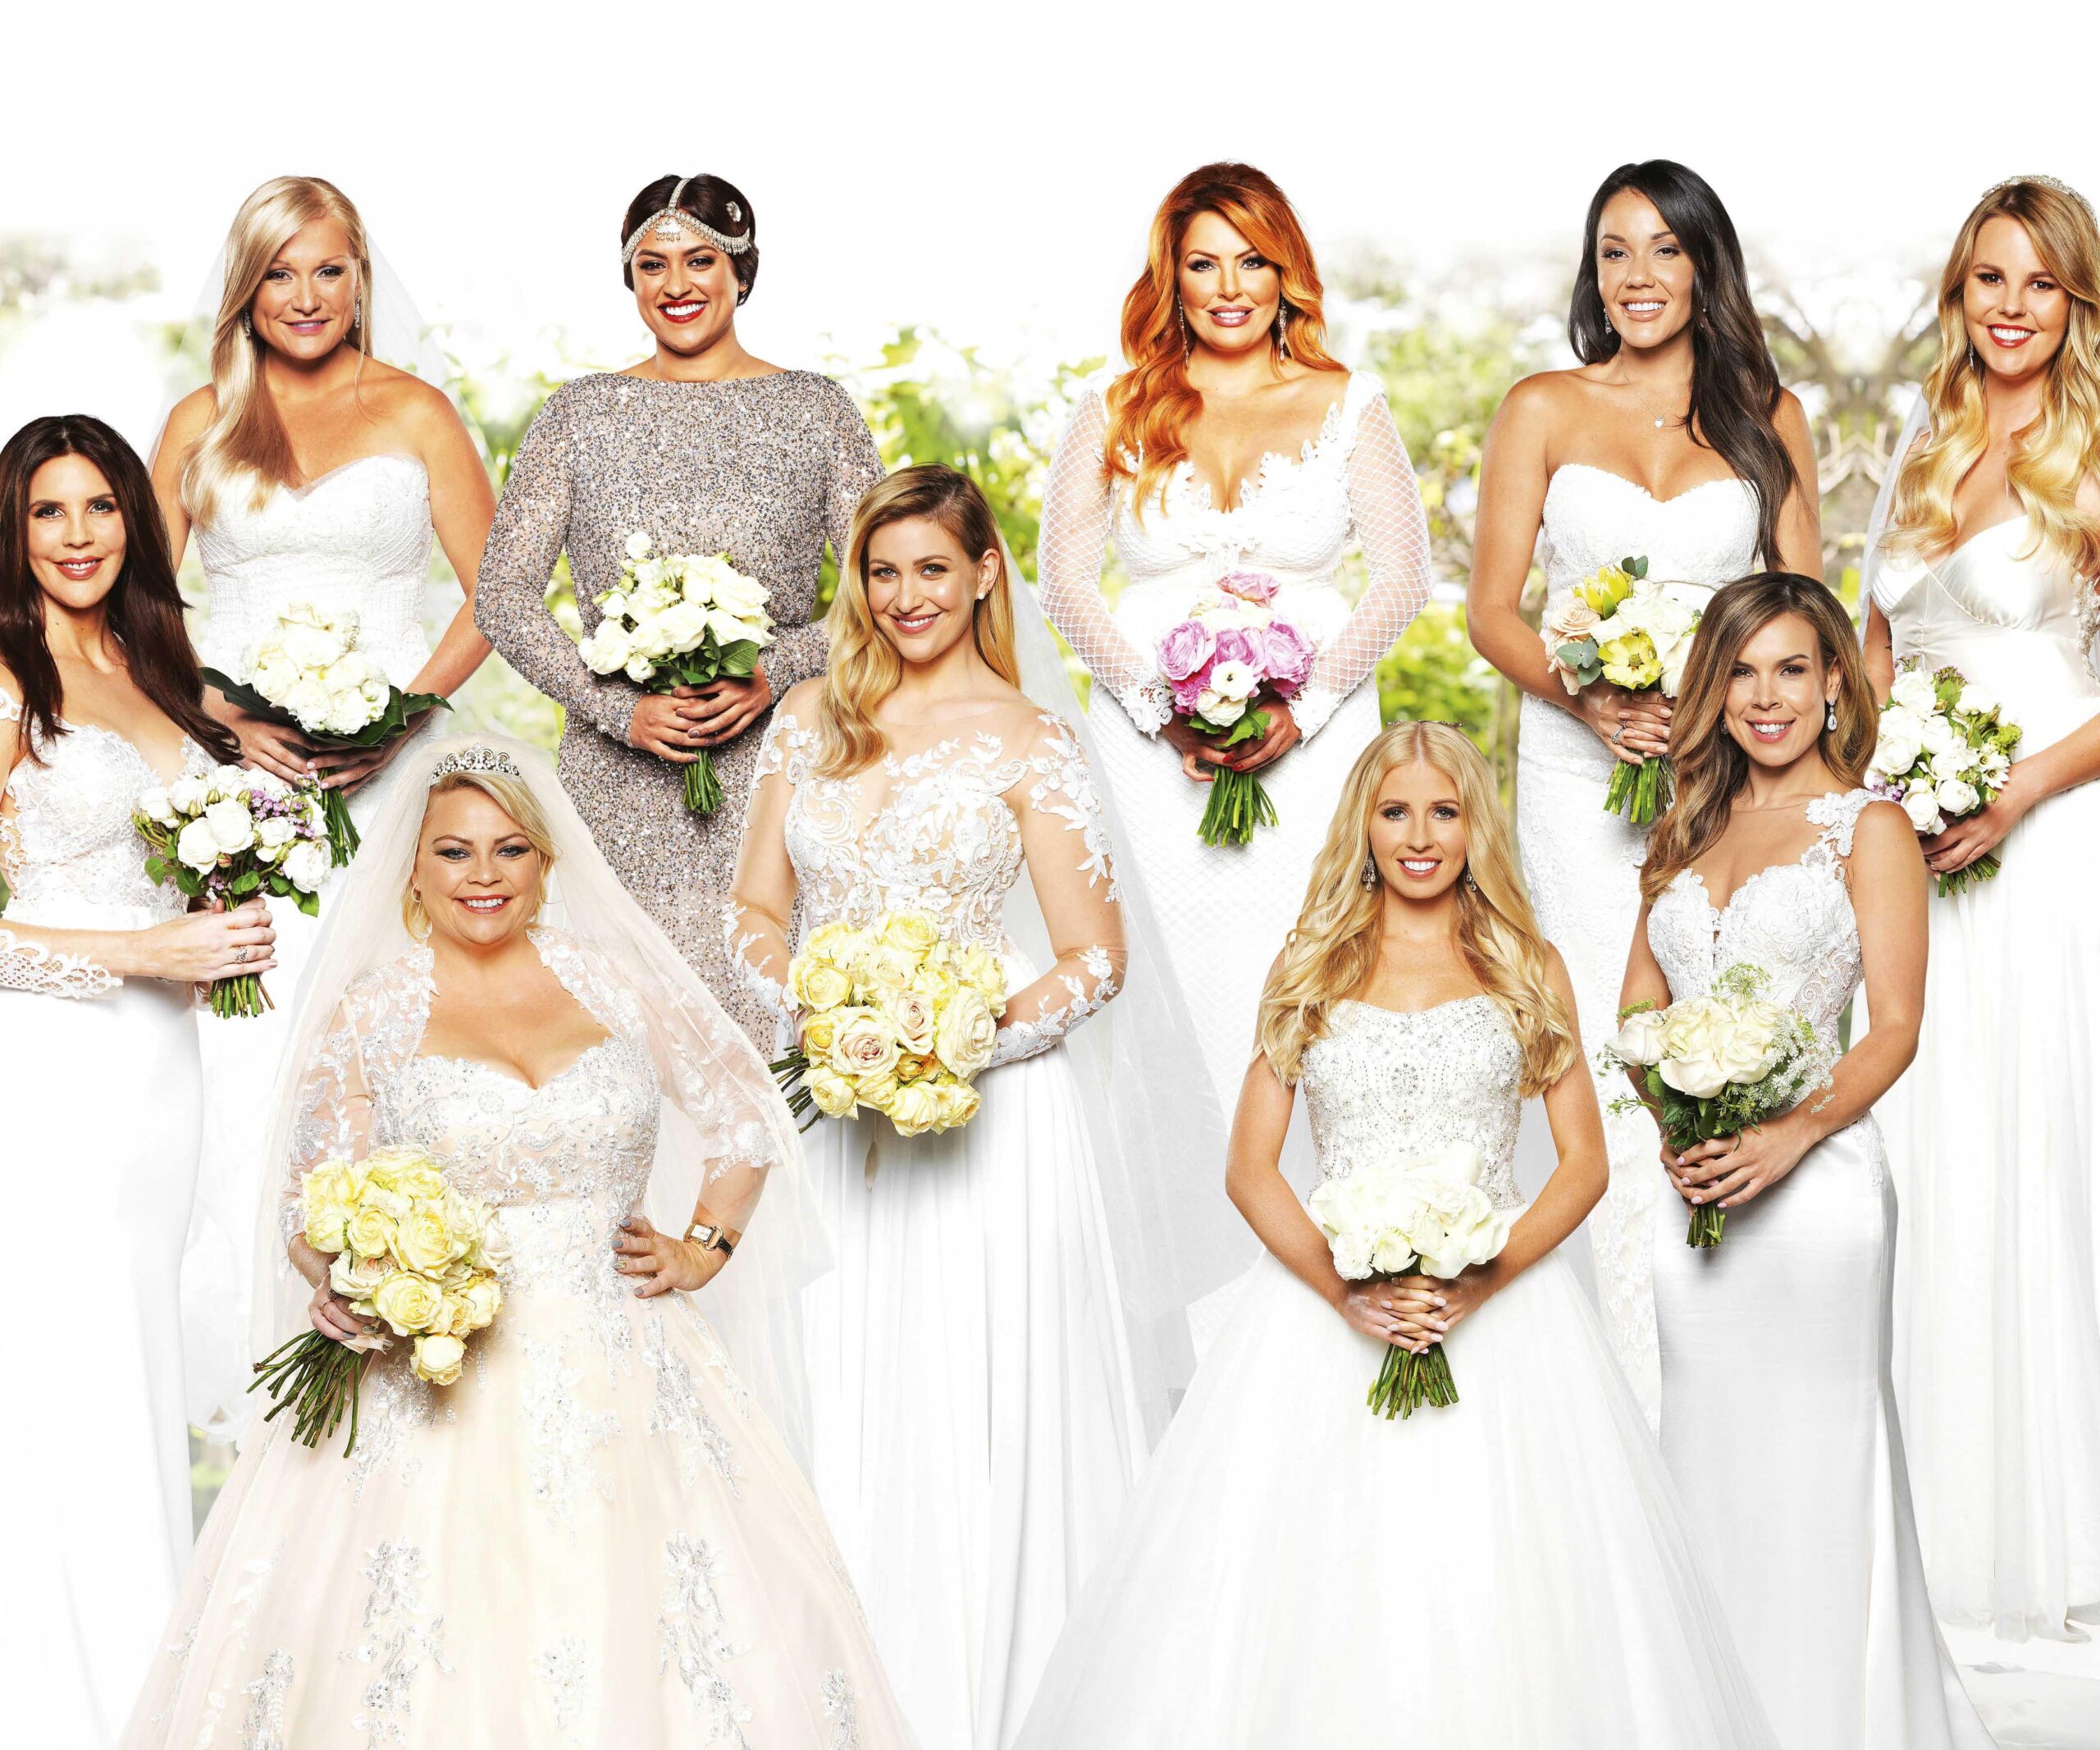 MAFS Australia Season 5 brides